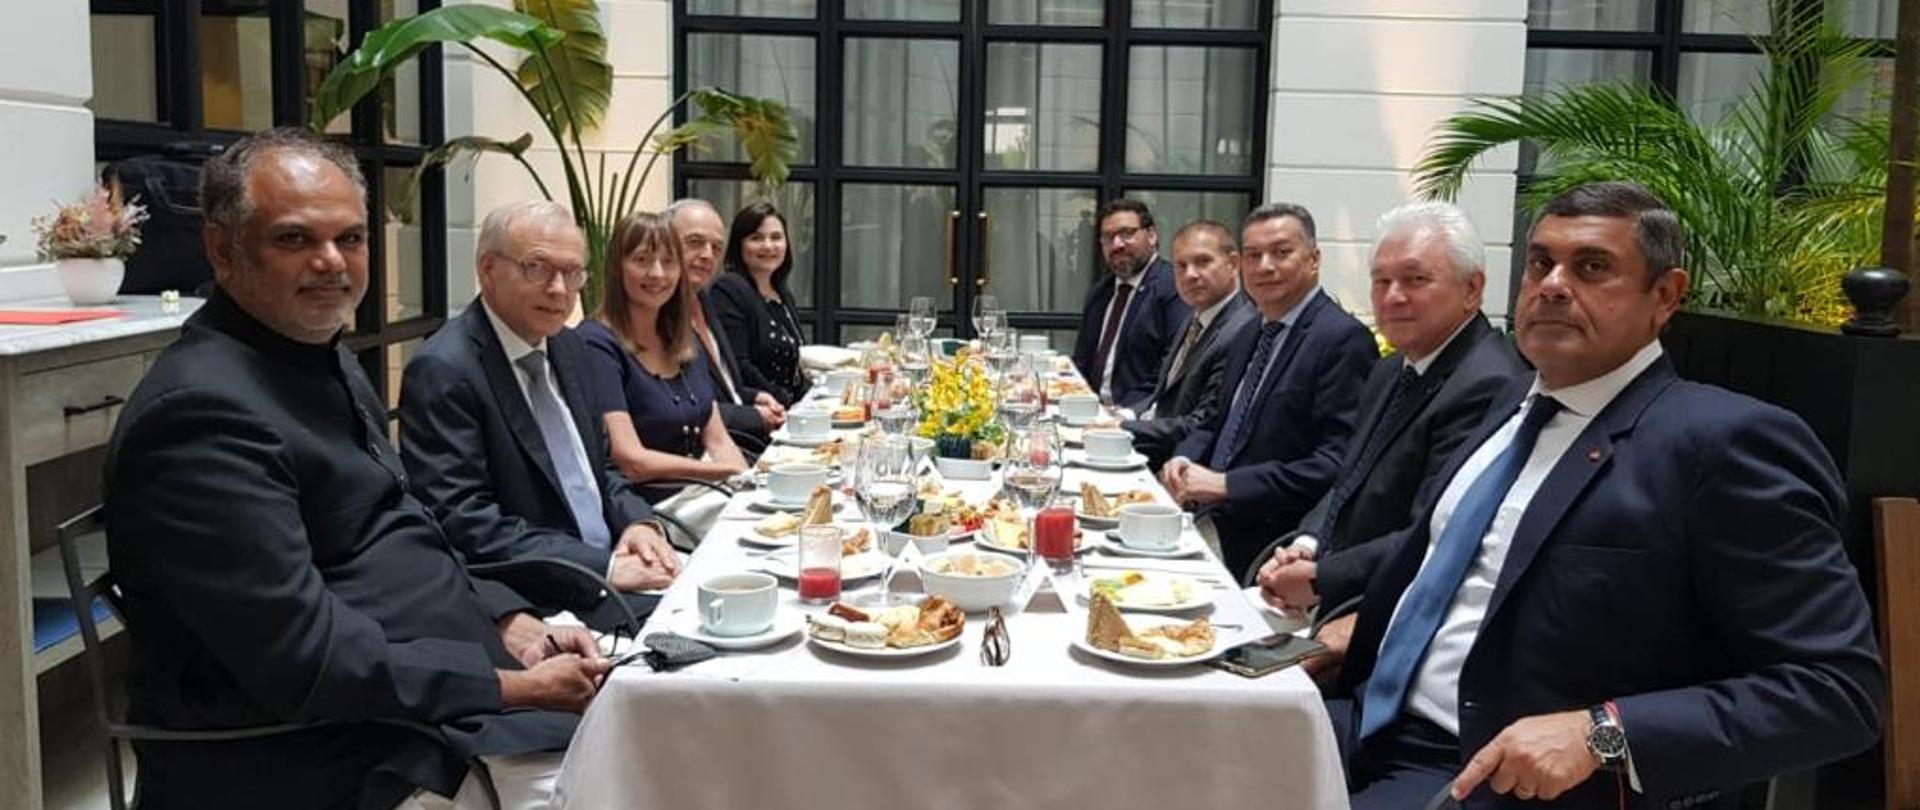 Ambasadorowie przy stole